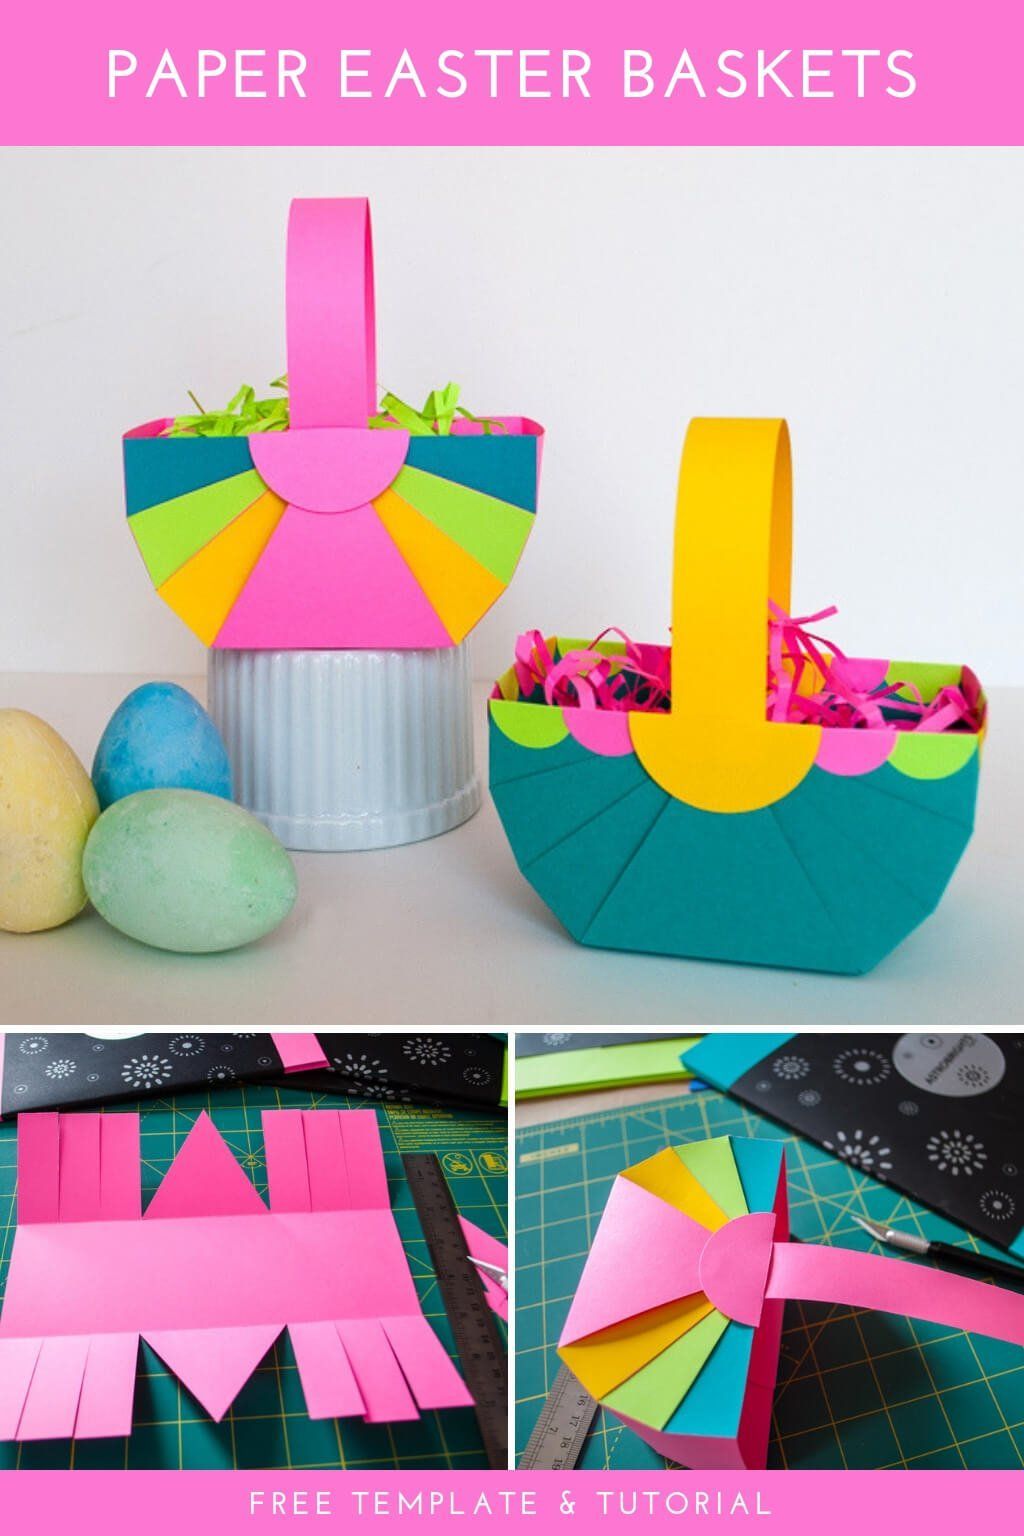 DIY Easter Basket Template (easy Easter crafts) - Merriment Design - DIY Easter Basket Template (easy Easter crafts) - Merriment Design -   diy Paper basket